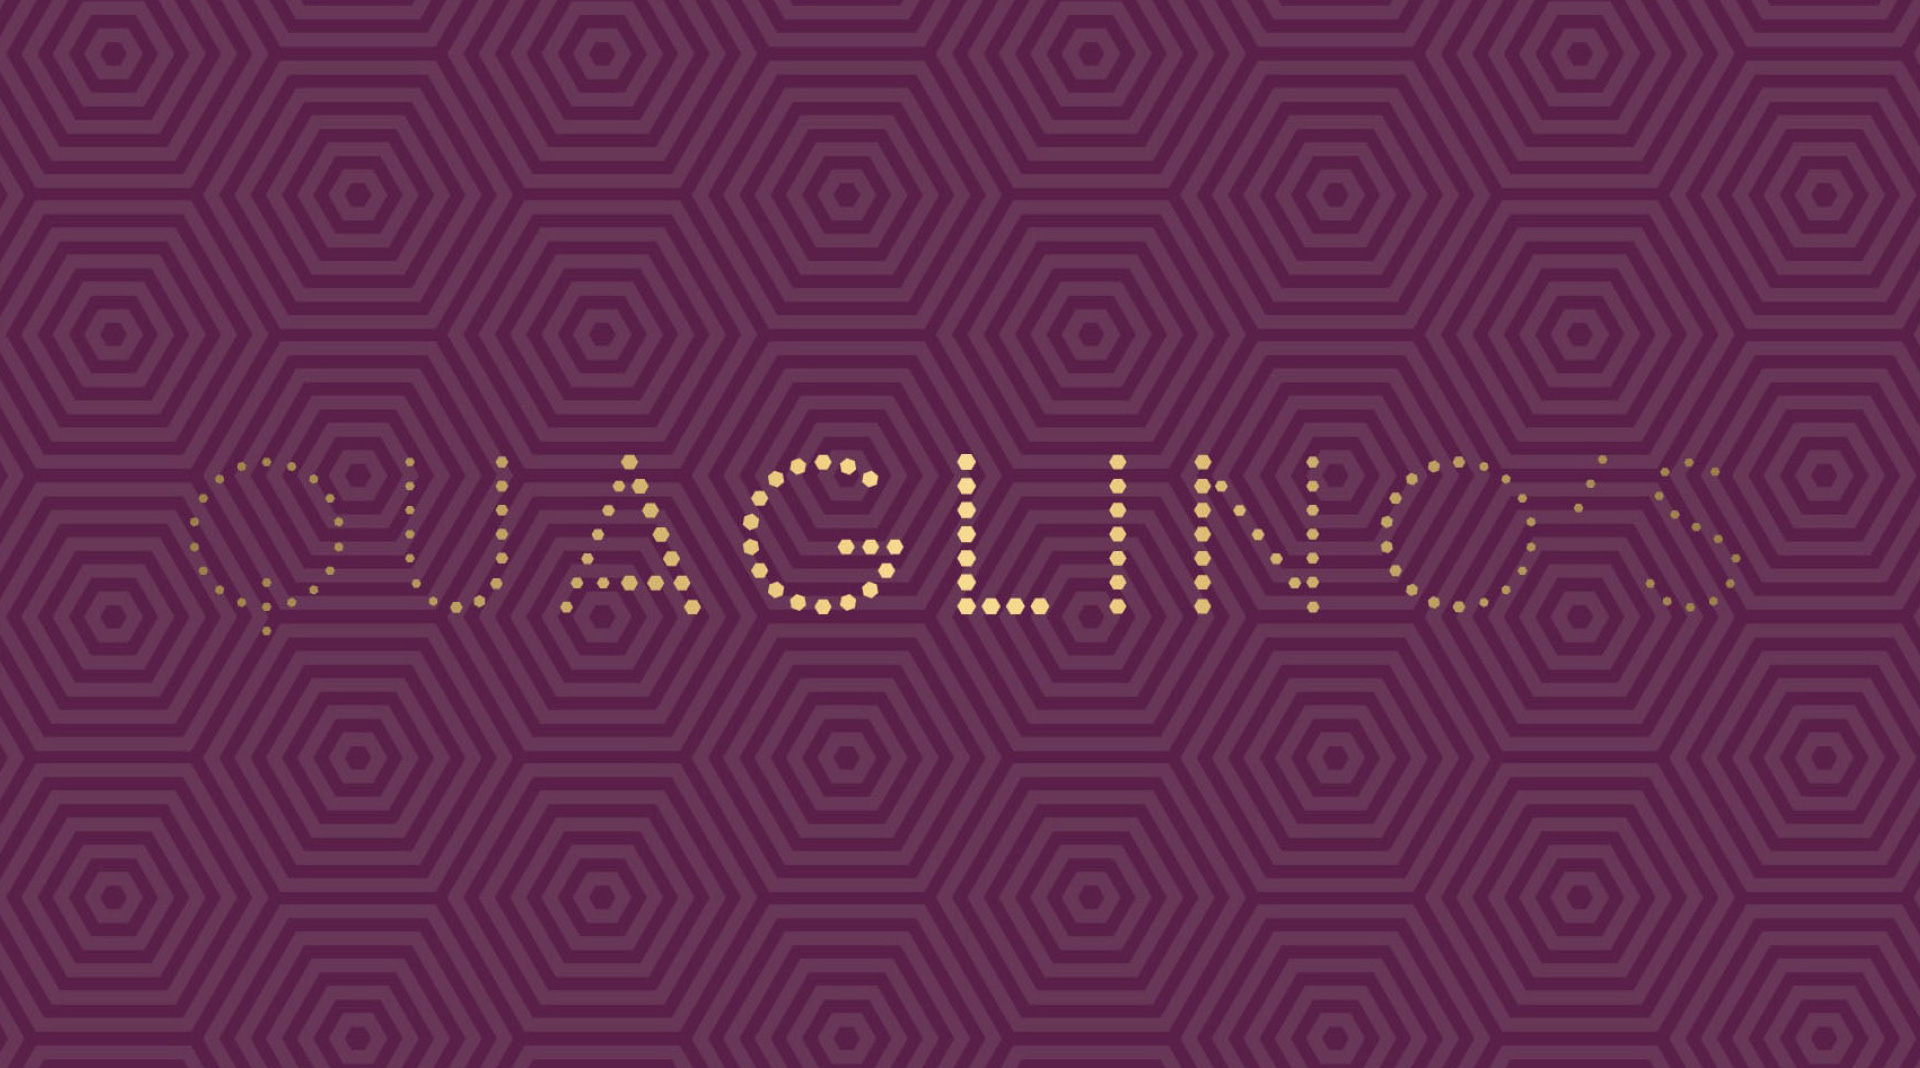 Quaglinos Branding Design